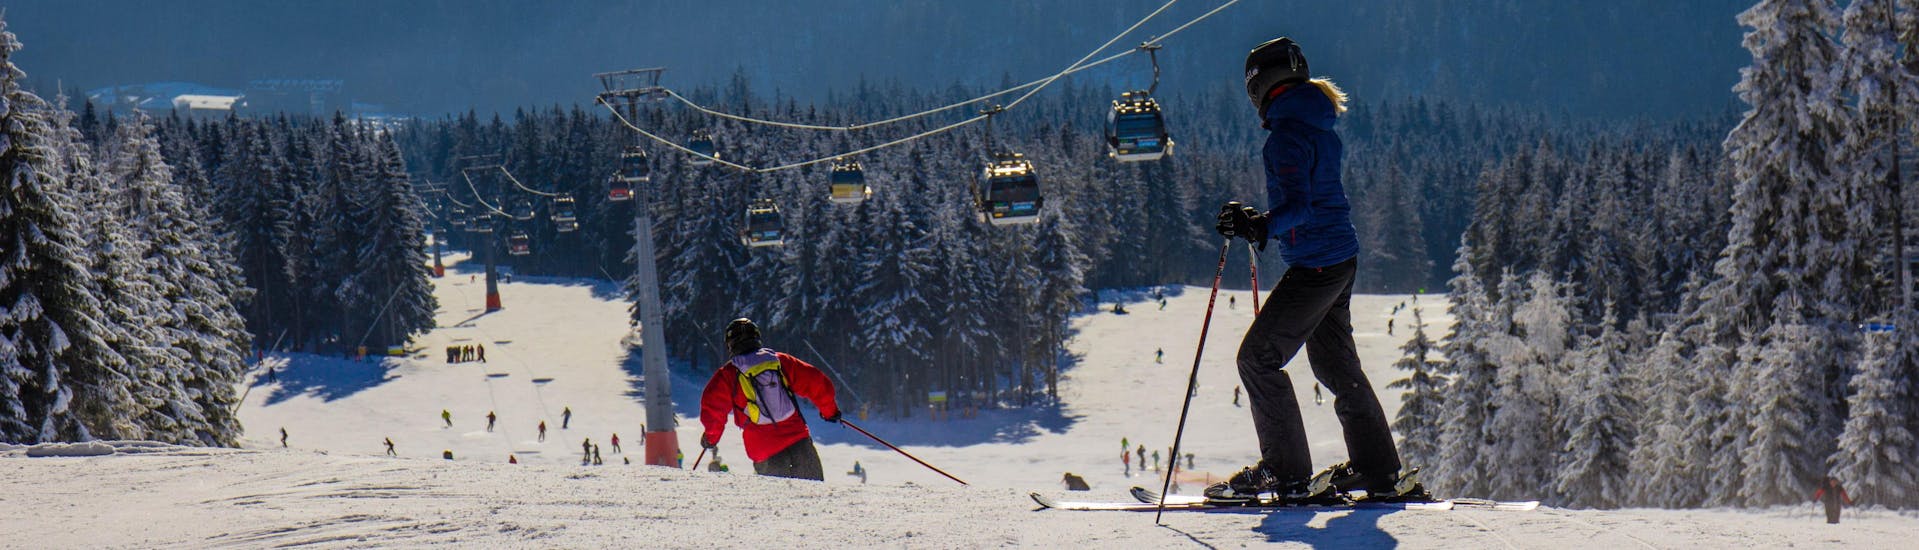 Blick auf die Pisten des Skigebiets Černá Hora in the Giant Mountains, wo die örtlichen Skischulen ihre Skikurse anbieten.